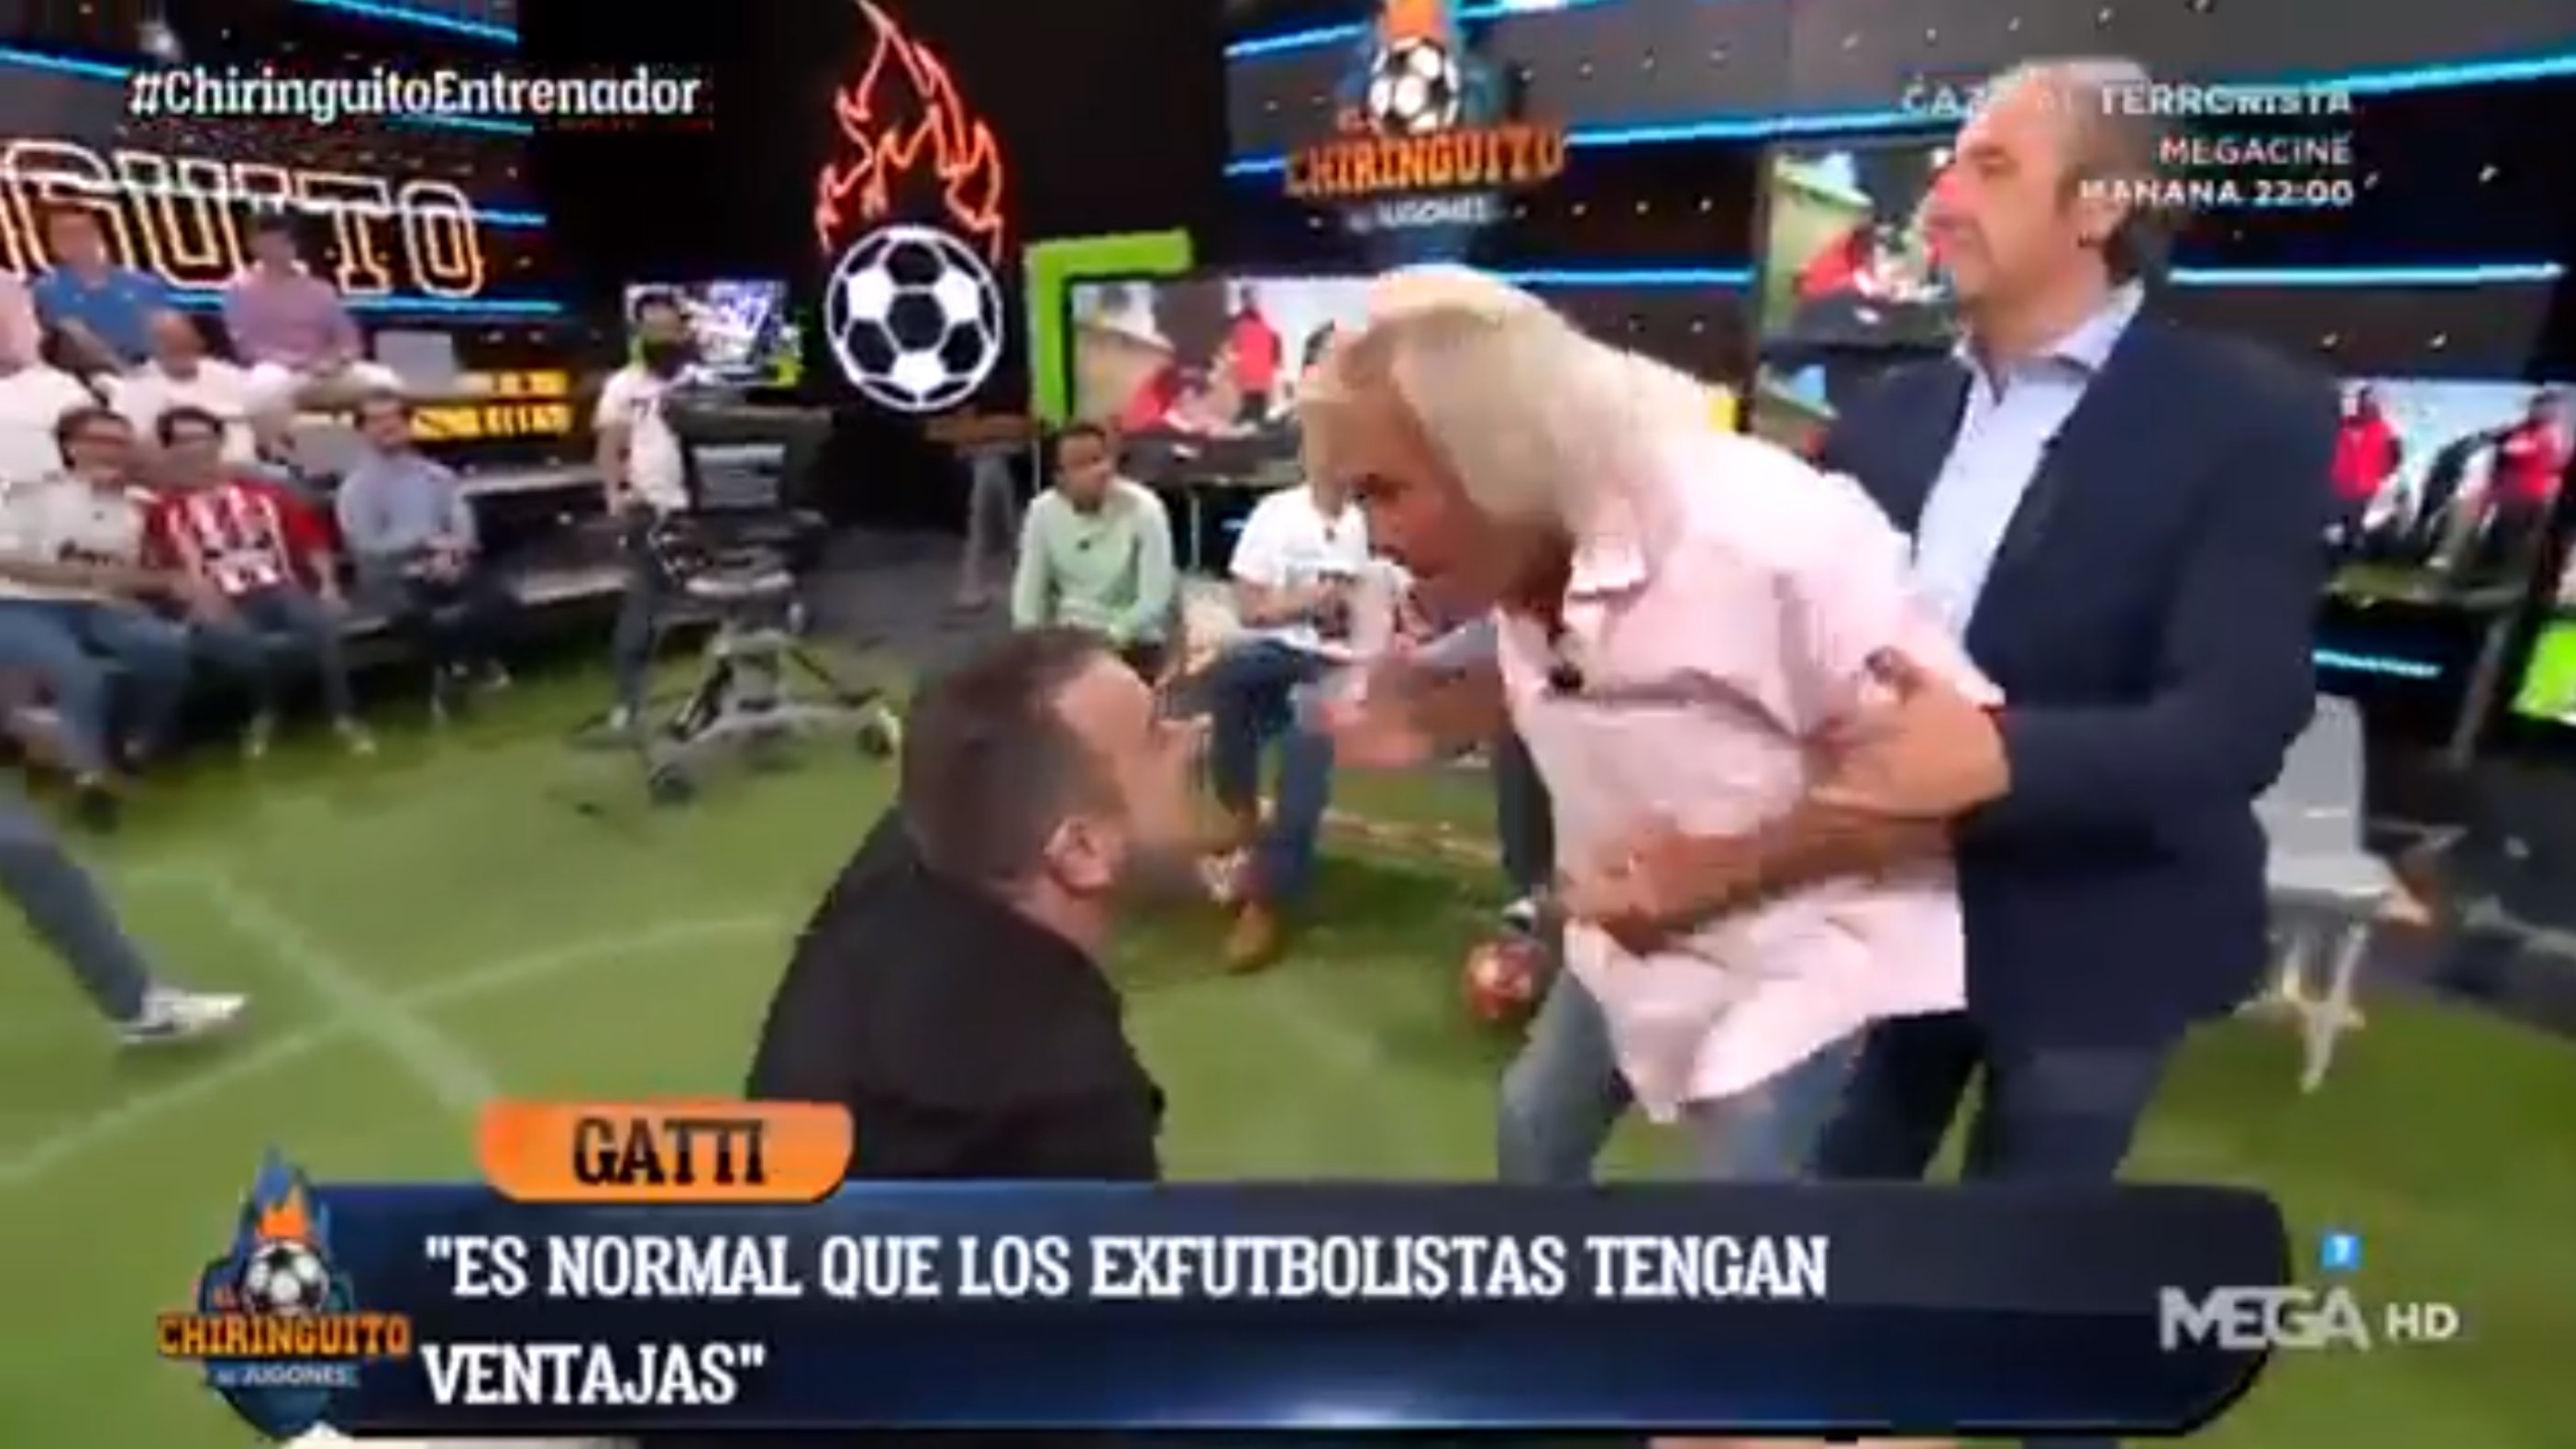 El Loco Gatti frega una nova agressió a "El Chiringuito": "Tenés cara de tonto"